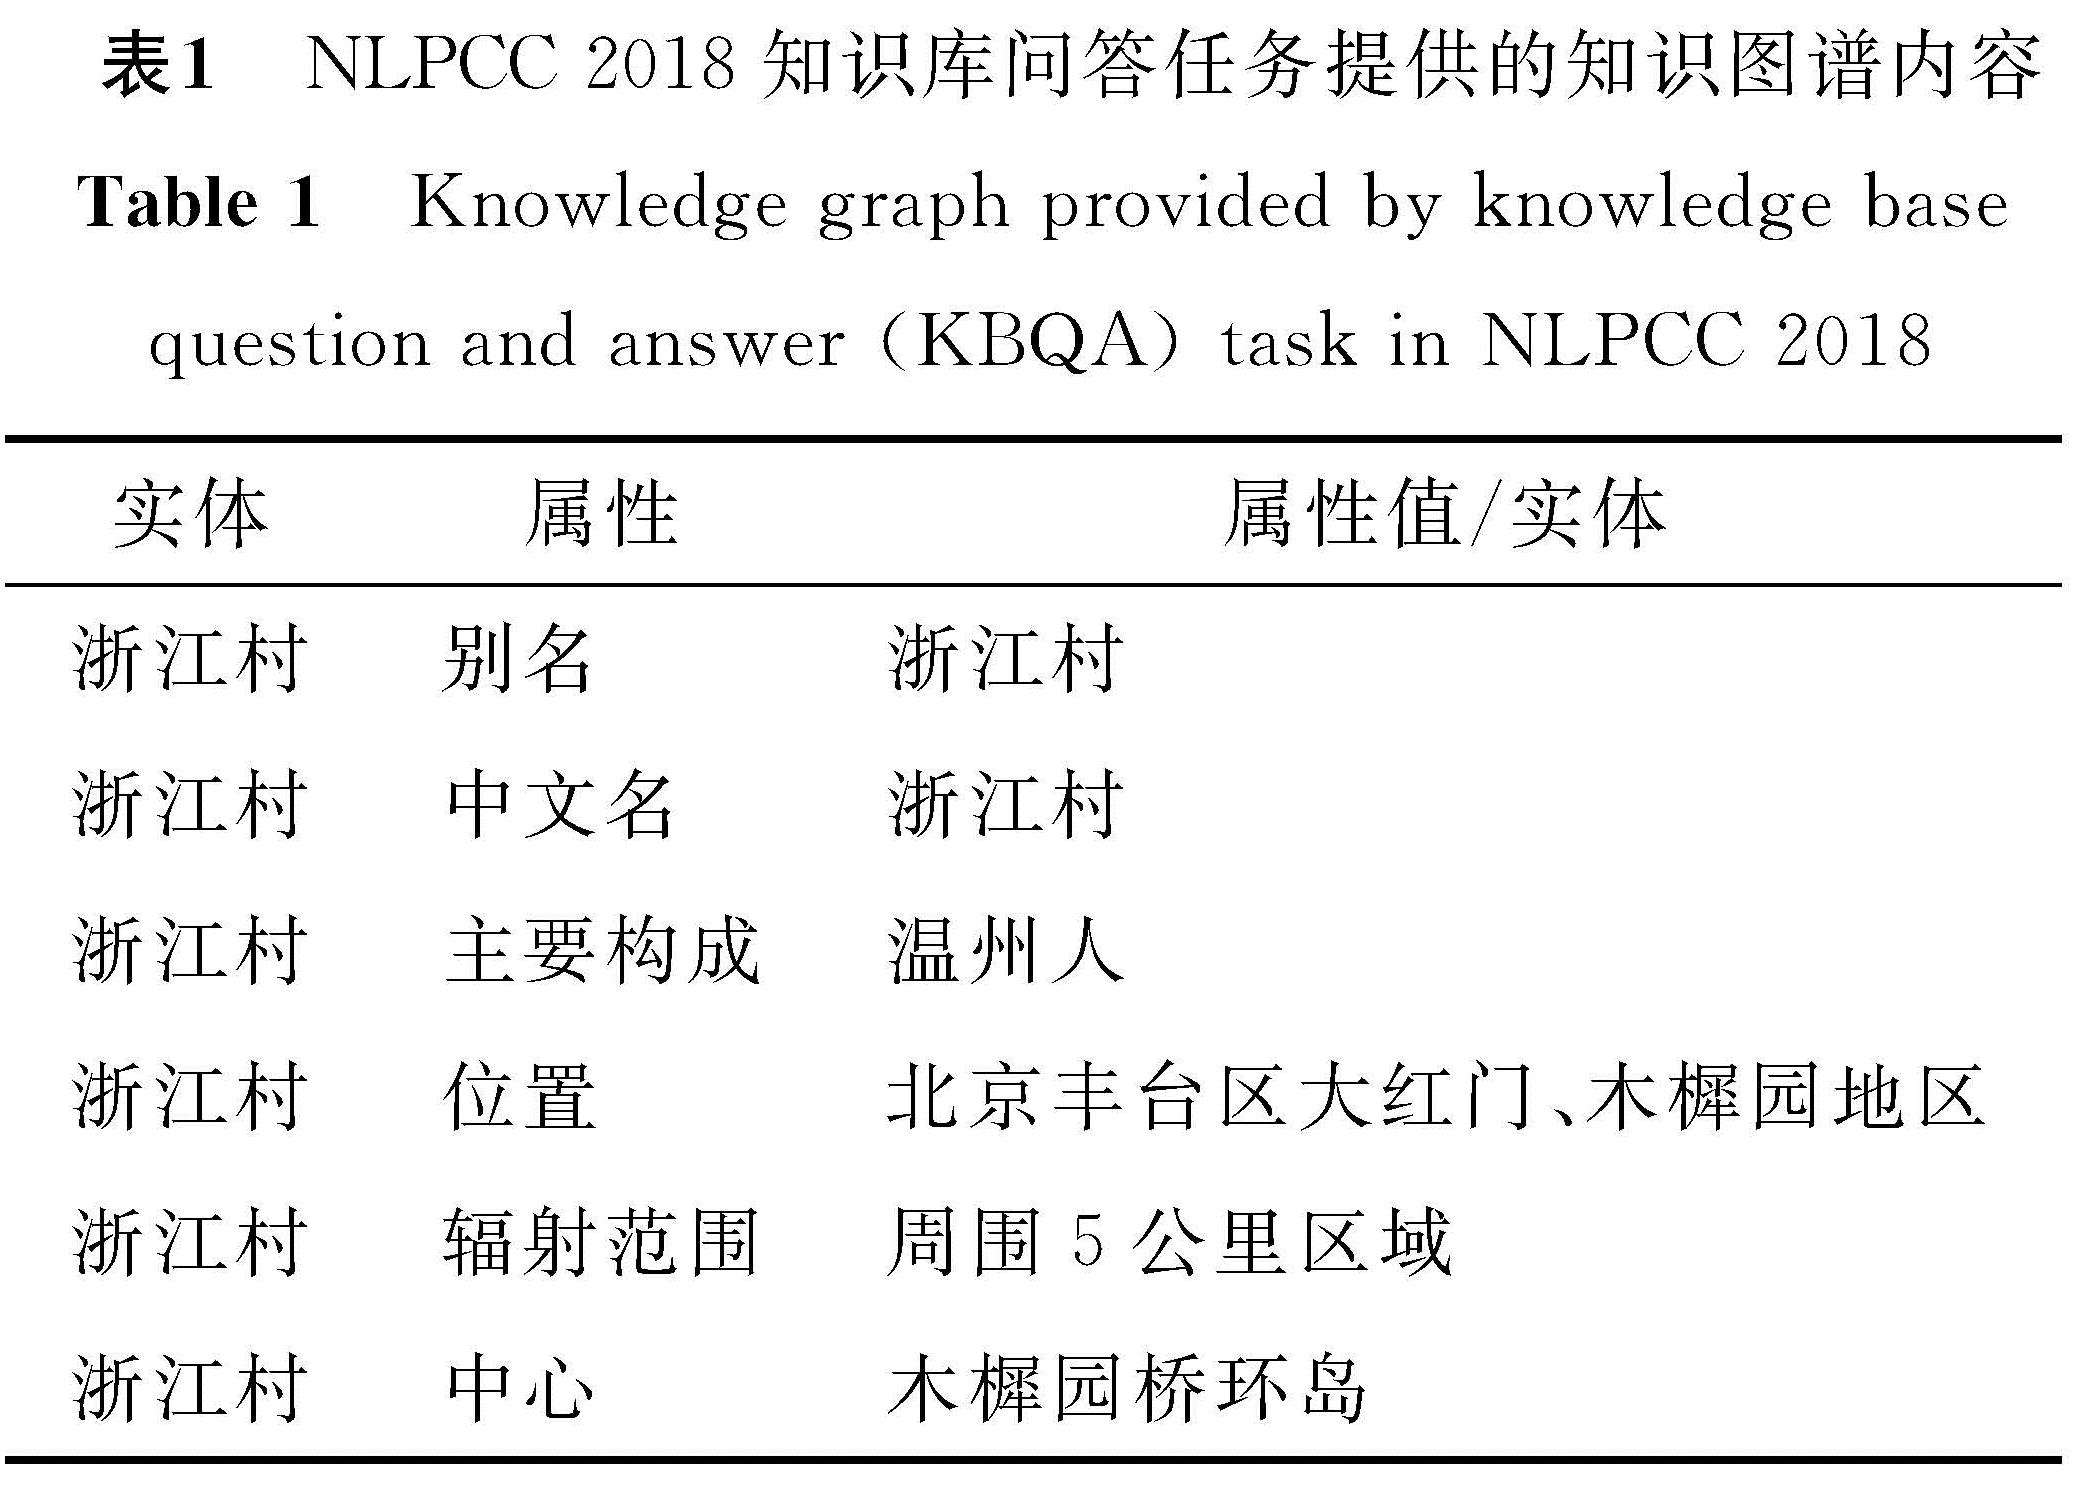 表1 NLPCC 2018知识库问答任务提供的知识图谱内容<br/>Table 1 Knowledge graph provided by knowledge base question and answer(KBQA)task in NLPCC 2018